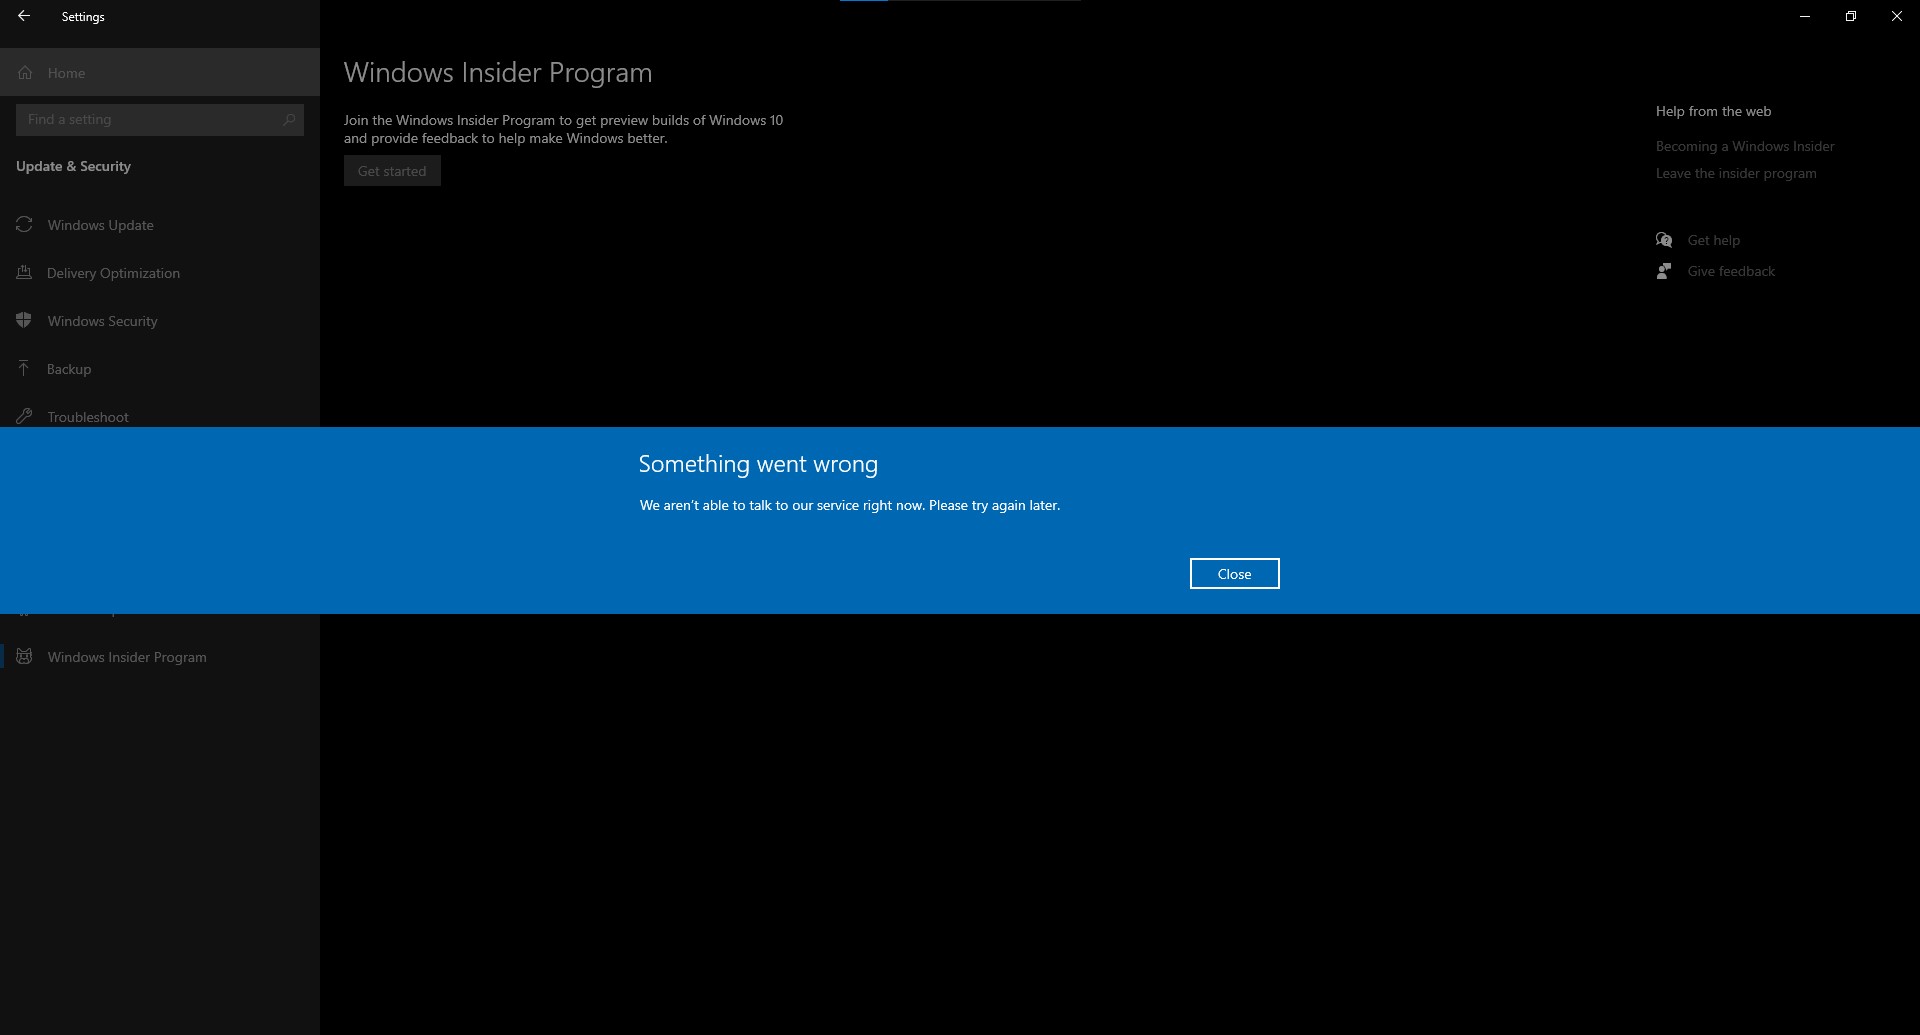 Windows insider get started not working error